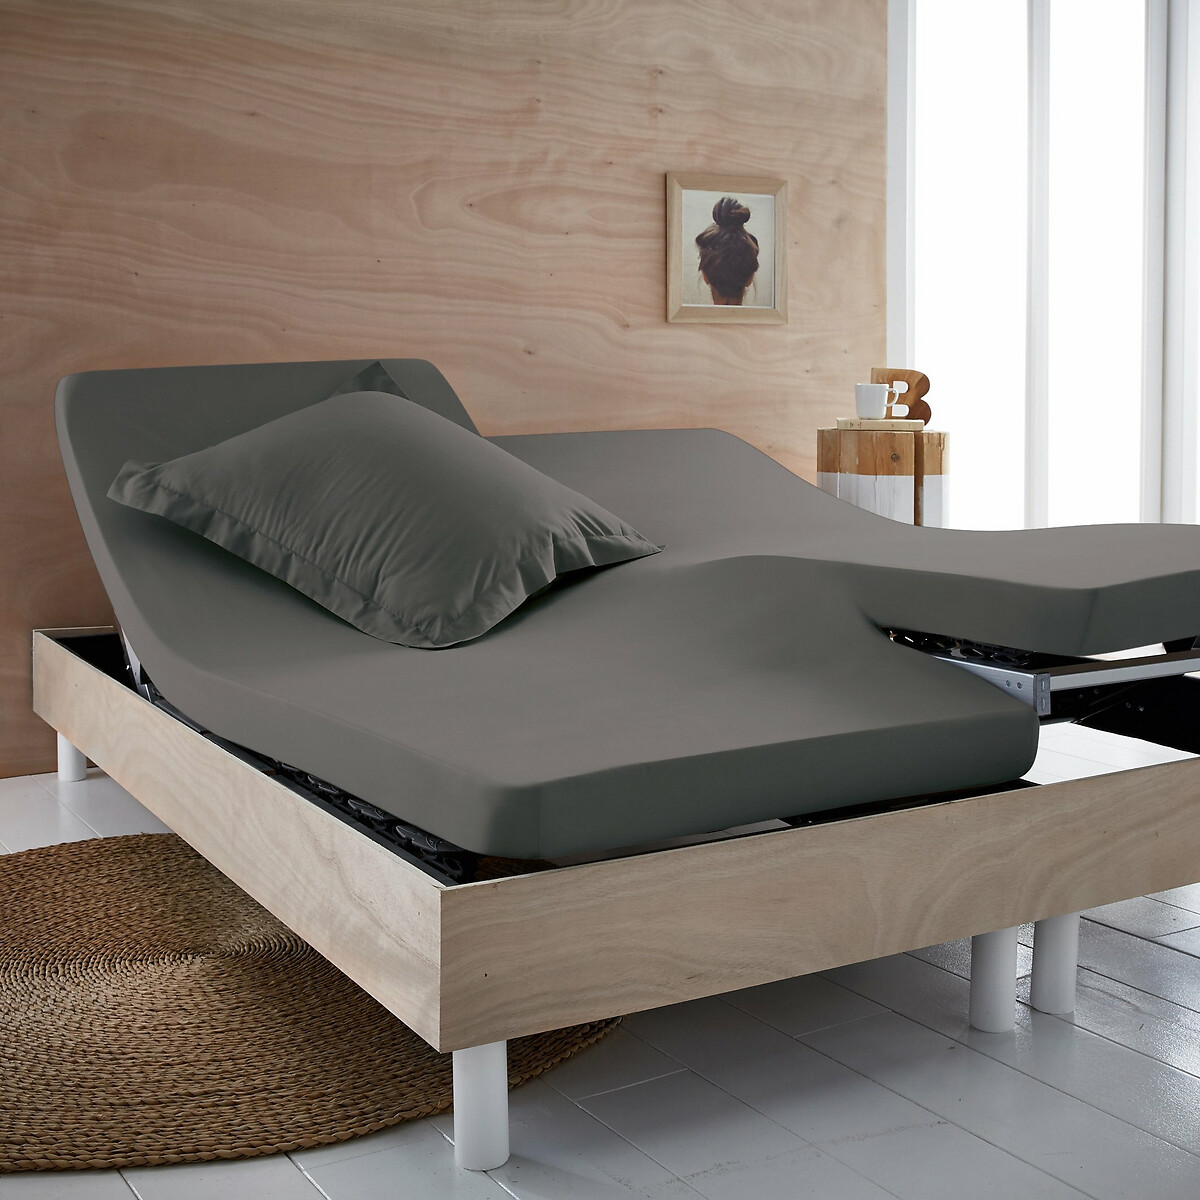 bajera lisa algodón para cama articulada, scenario La Redoute Interieurs | La Redoute